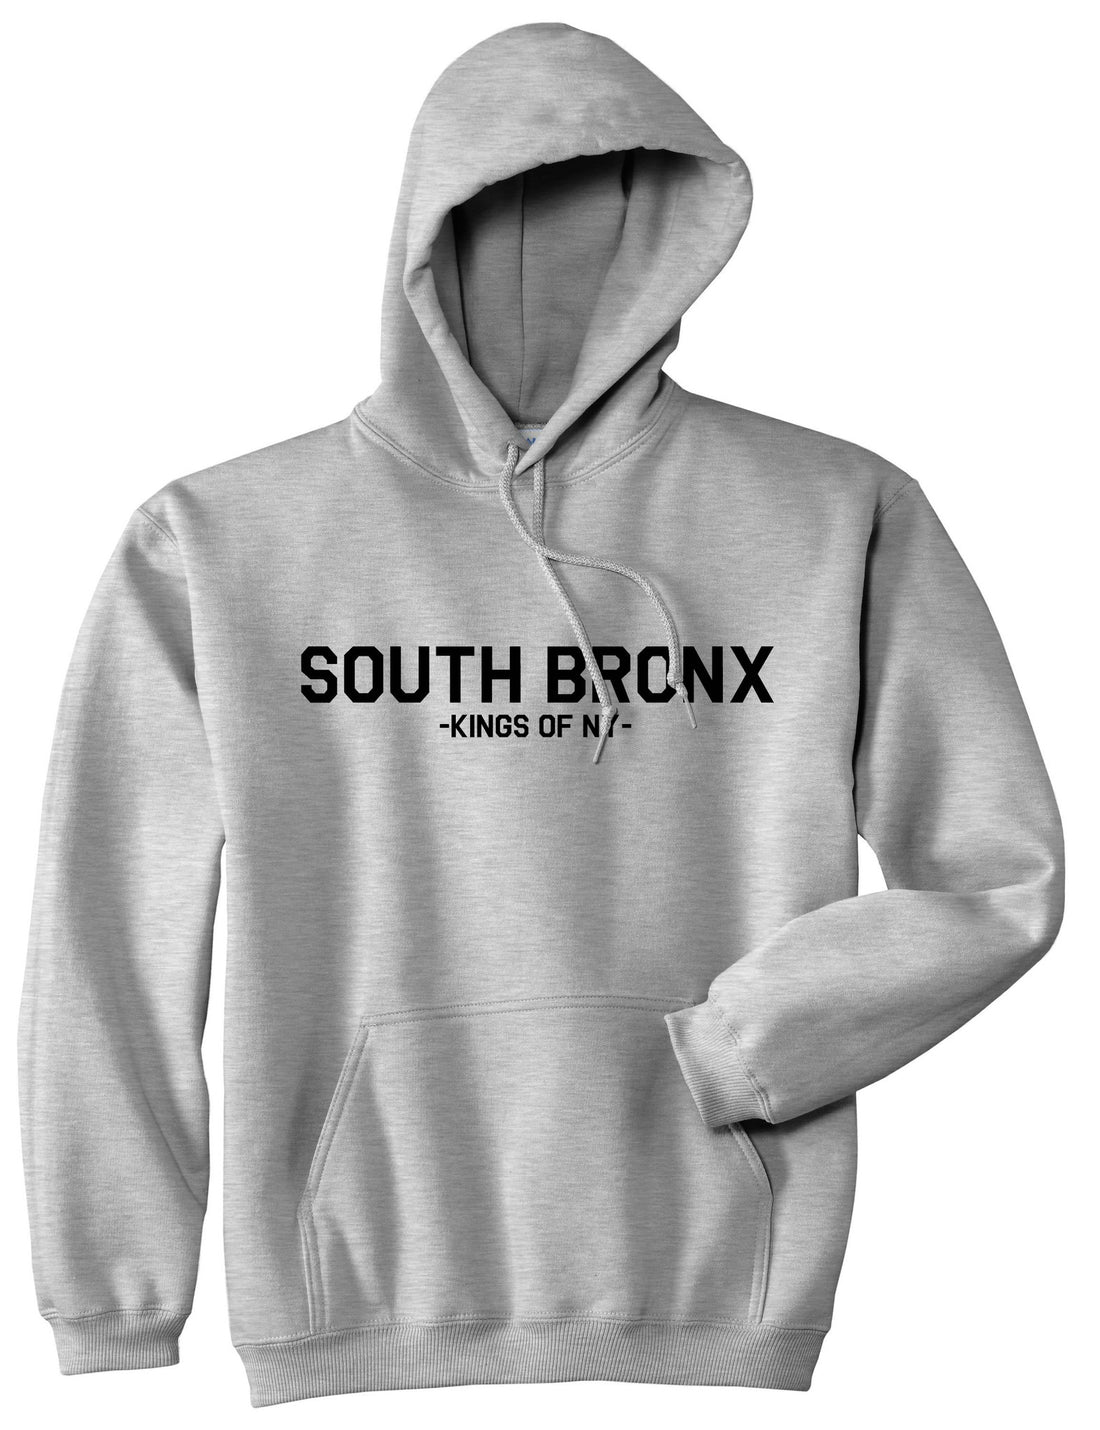 South Bronx BX New York Pullover Hoodie Hoody in Grey